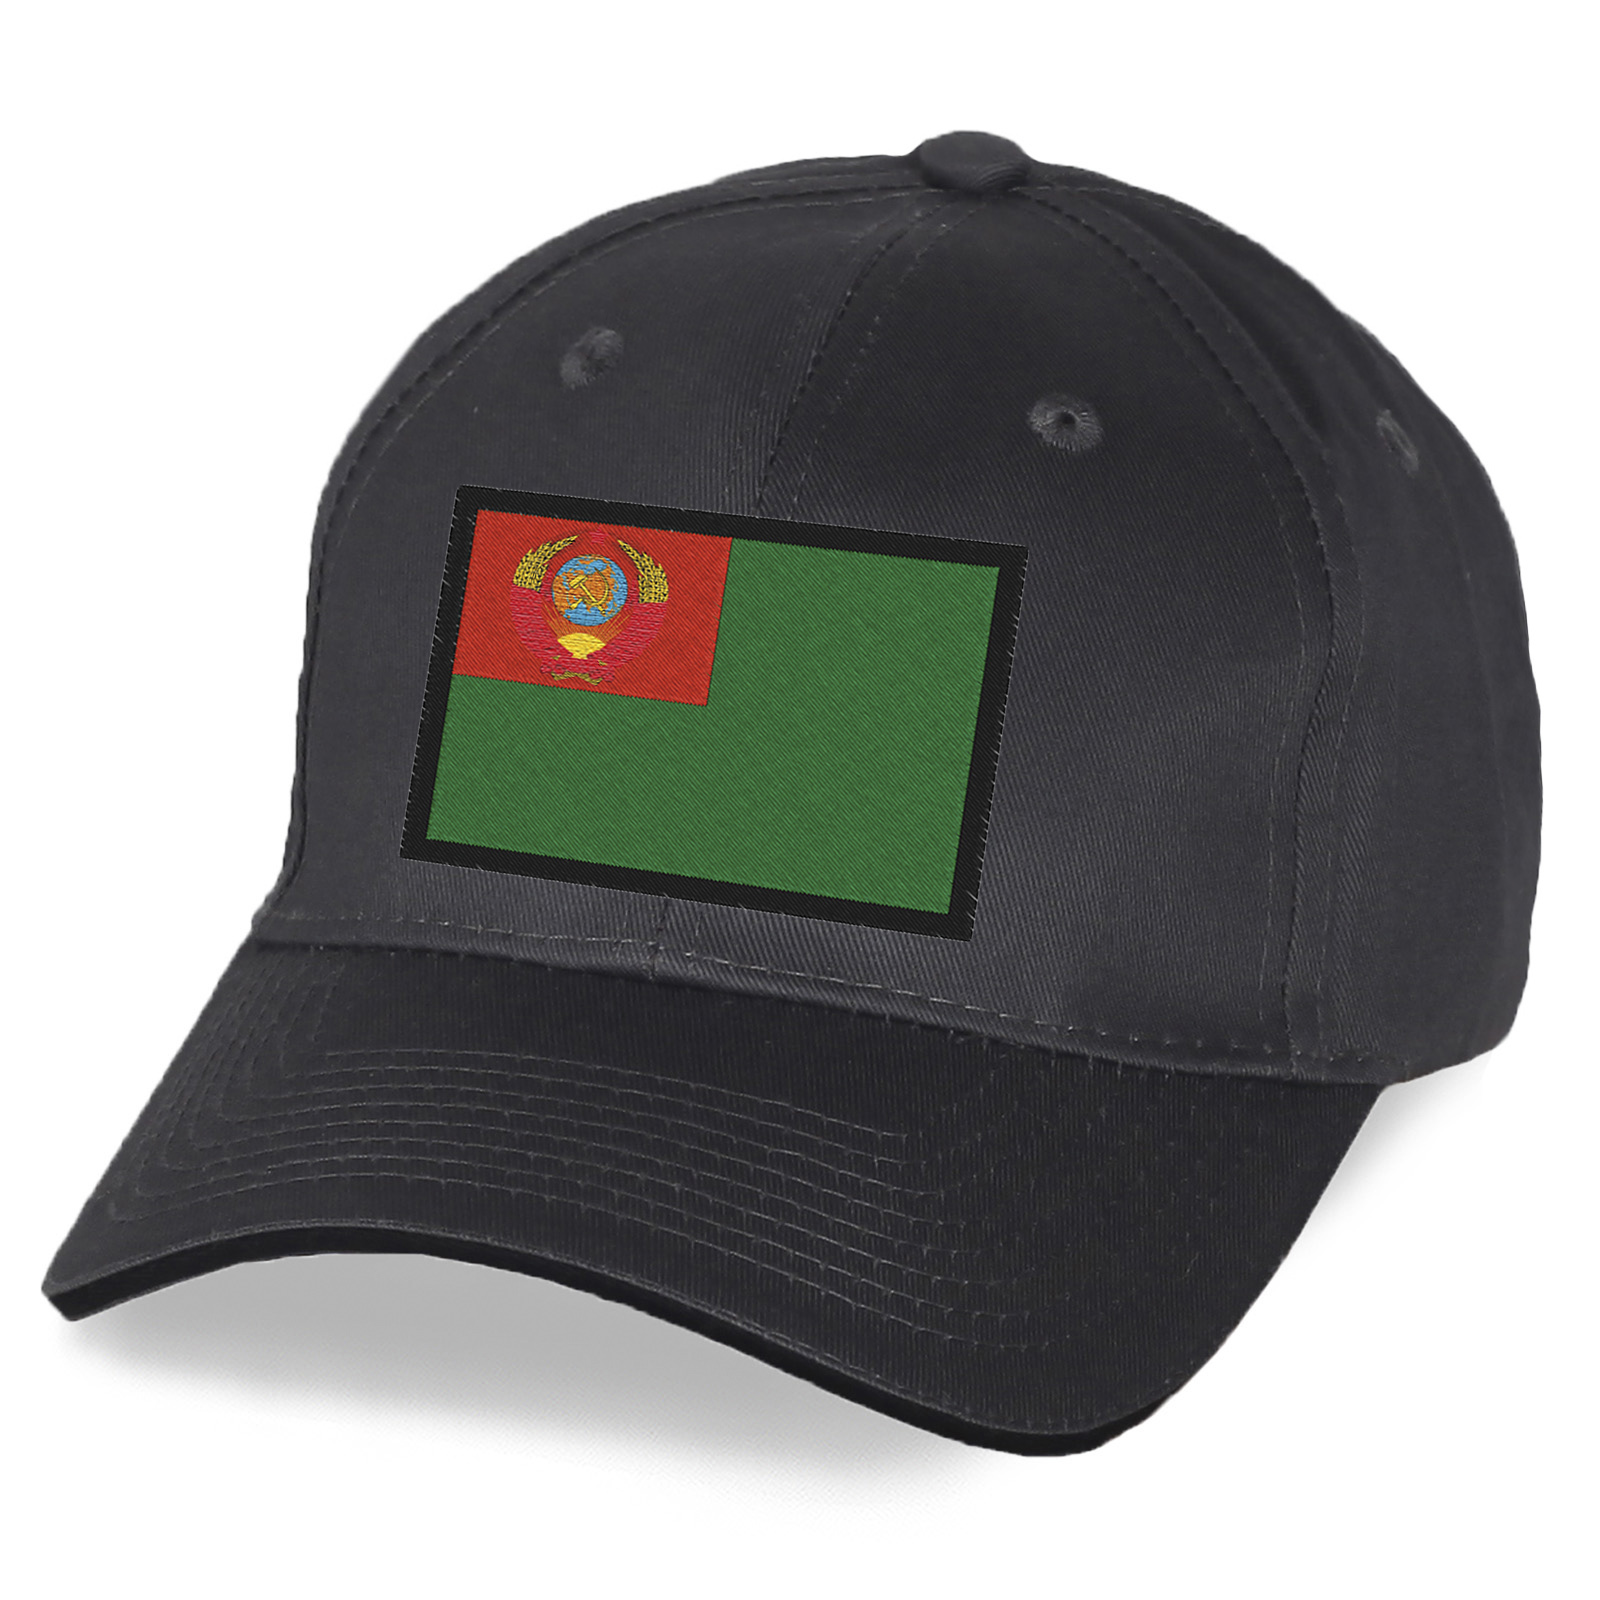 Заказать особую пограничную кепку с вышивкой советского флага по привлекательной цене